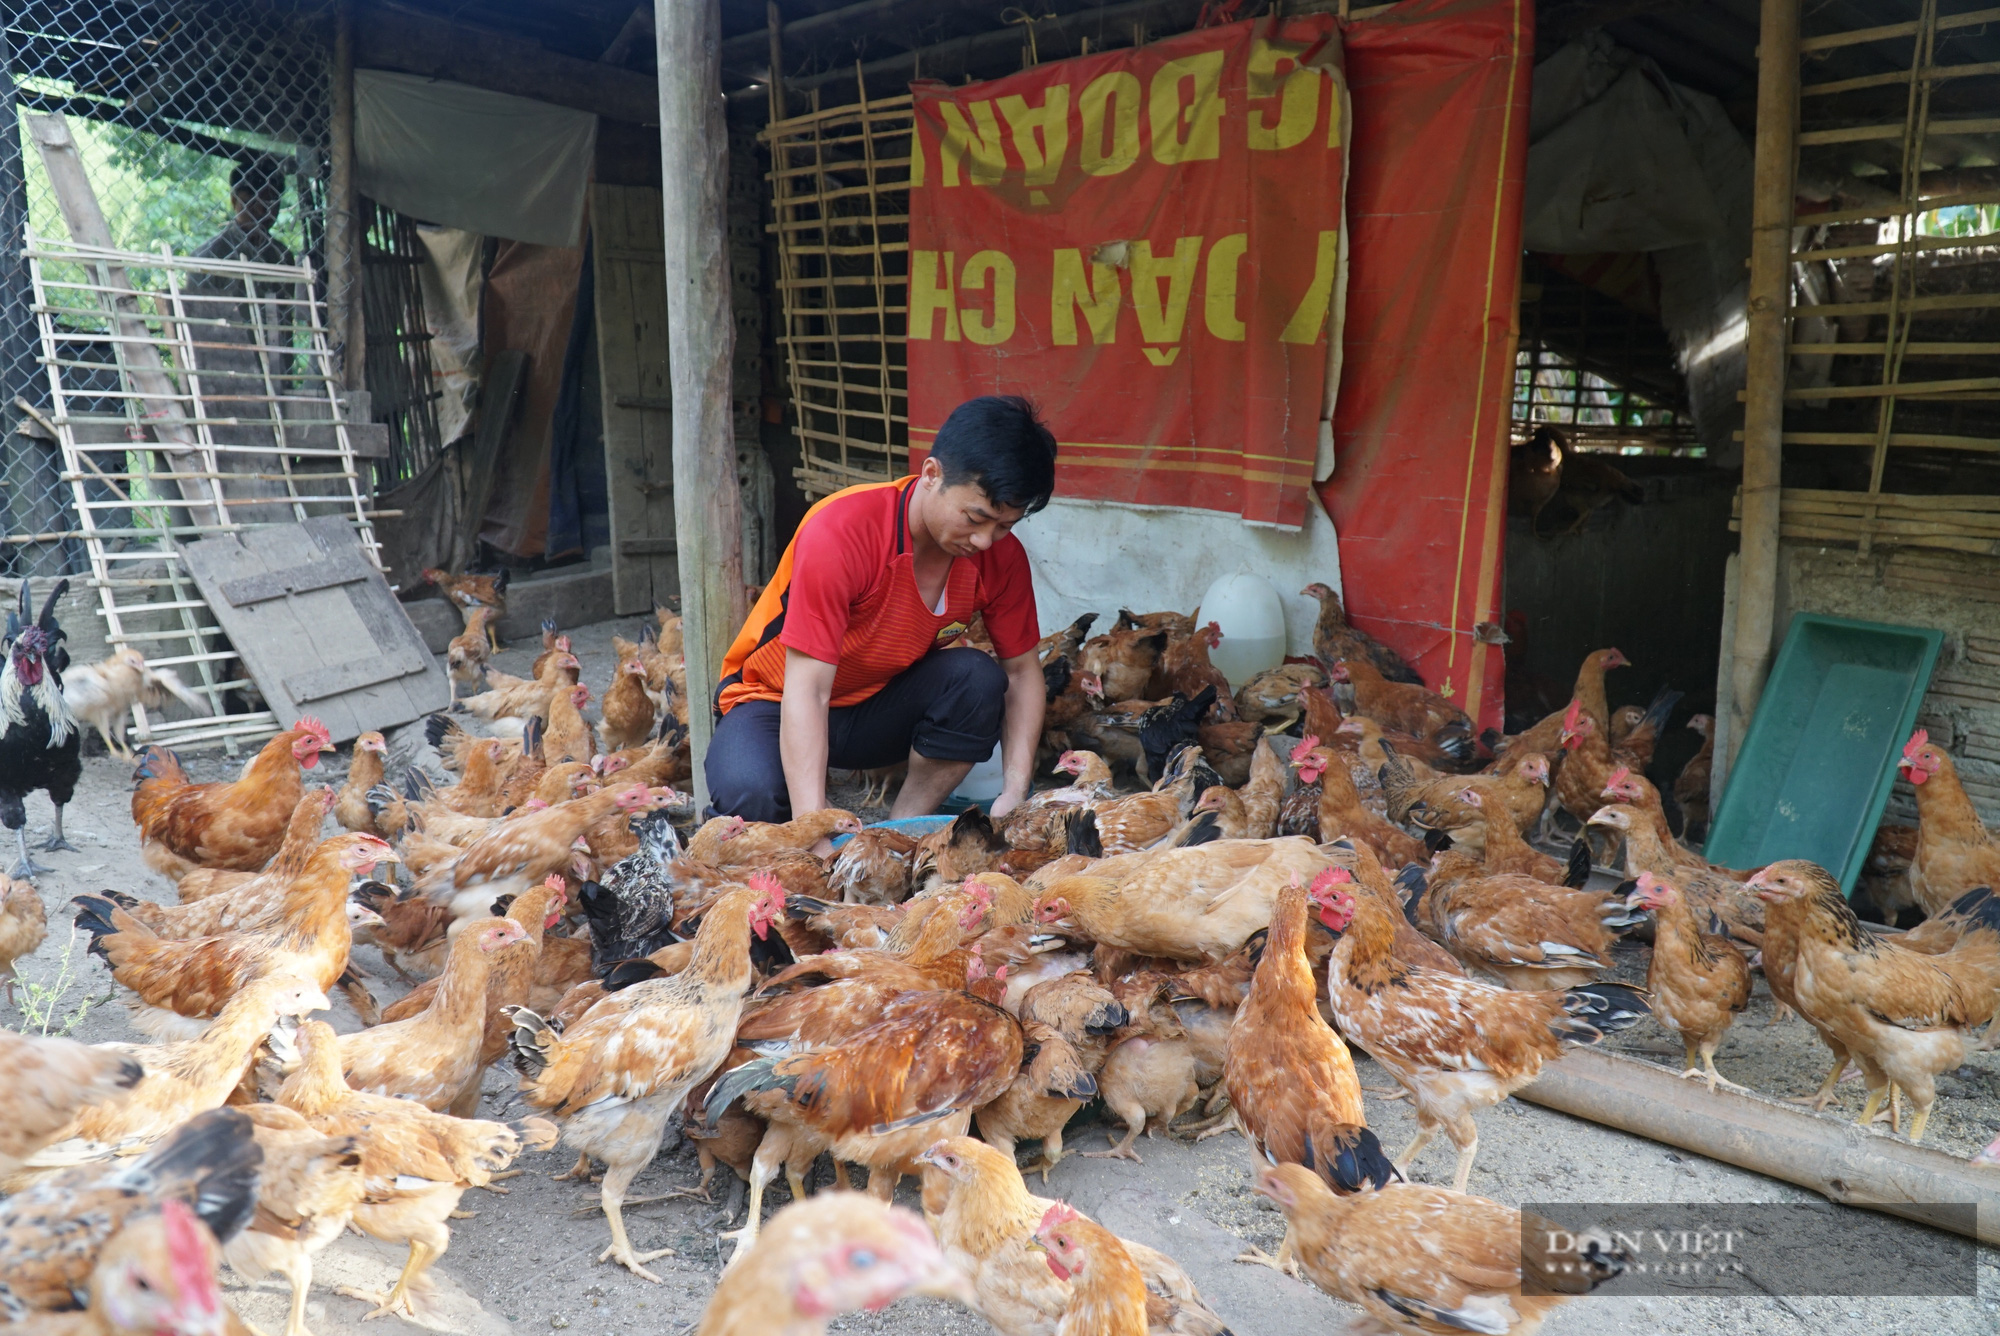 Nhờ “tuyệt chiêu” đơn giản này, một thầy giáo ở huyện Trạm Tấu đã có thu nhập cao từ nuôi gà, trồng cây ăn trái - Ảnh 2.